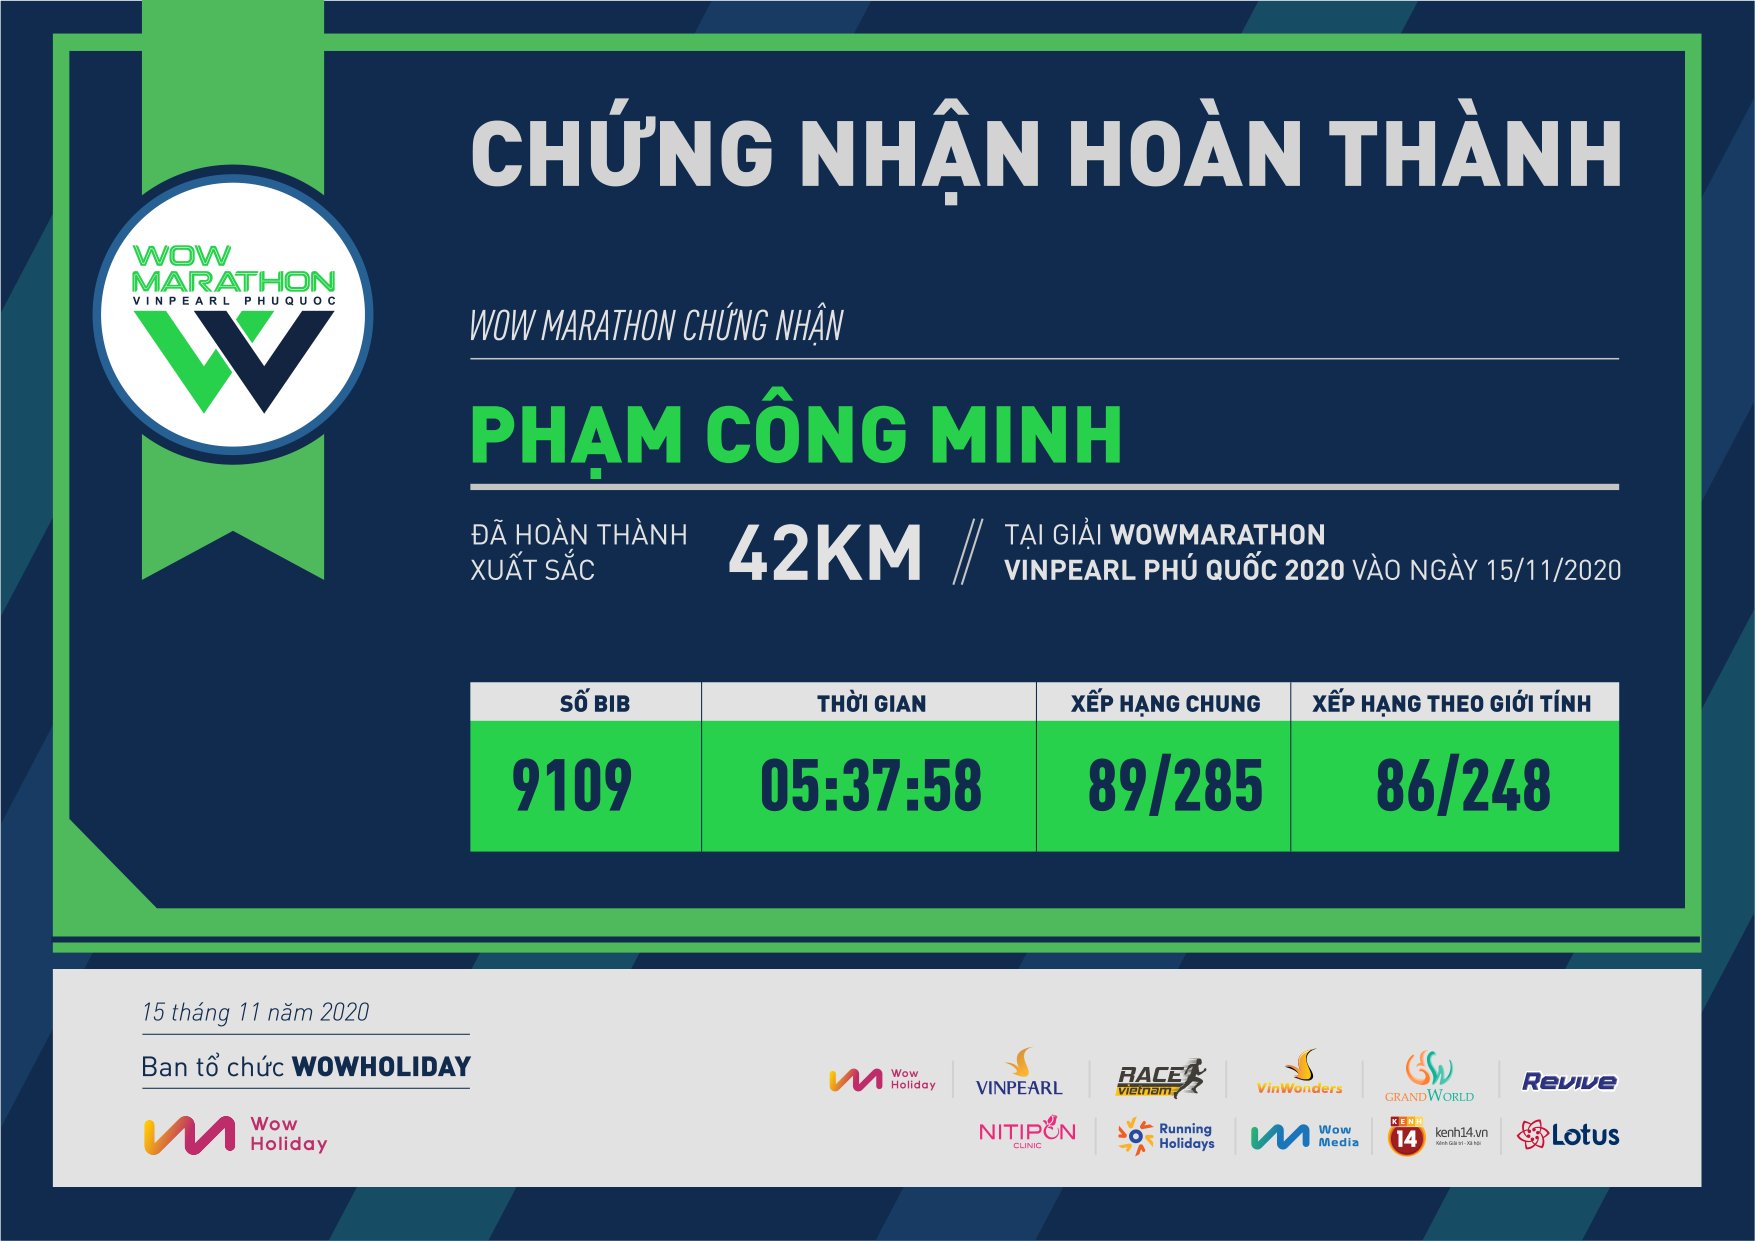 9109 - Phạm Công Minh